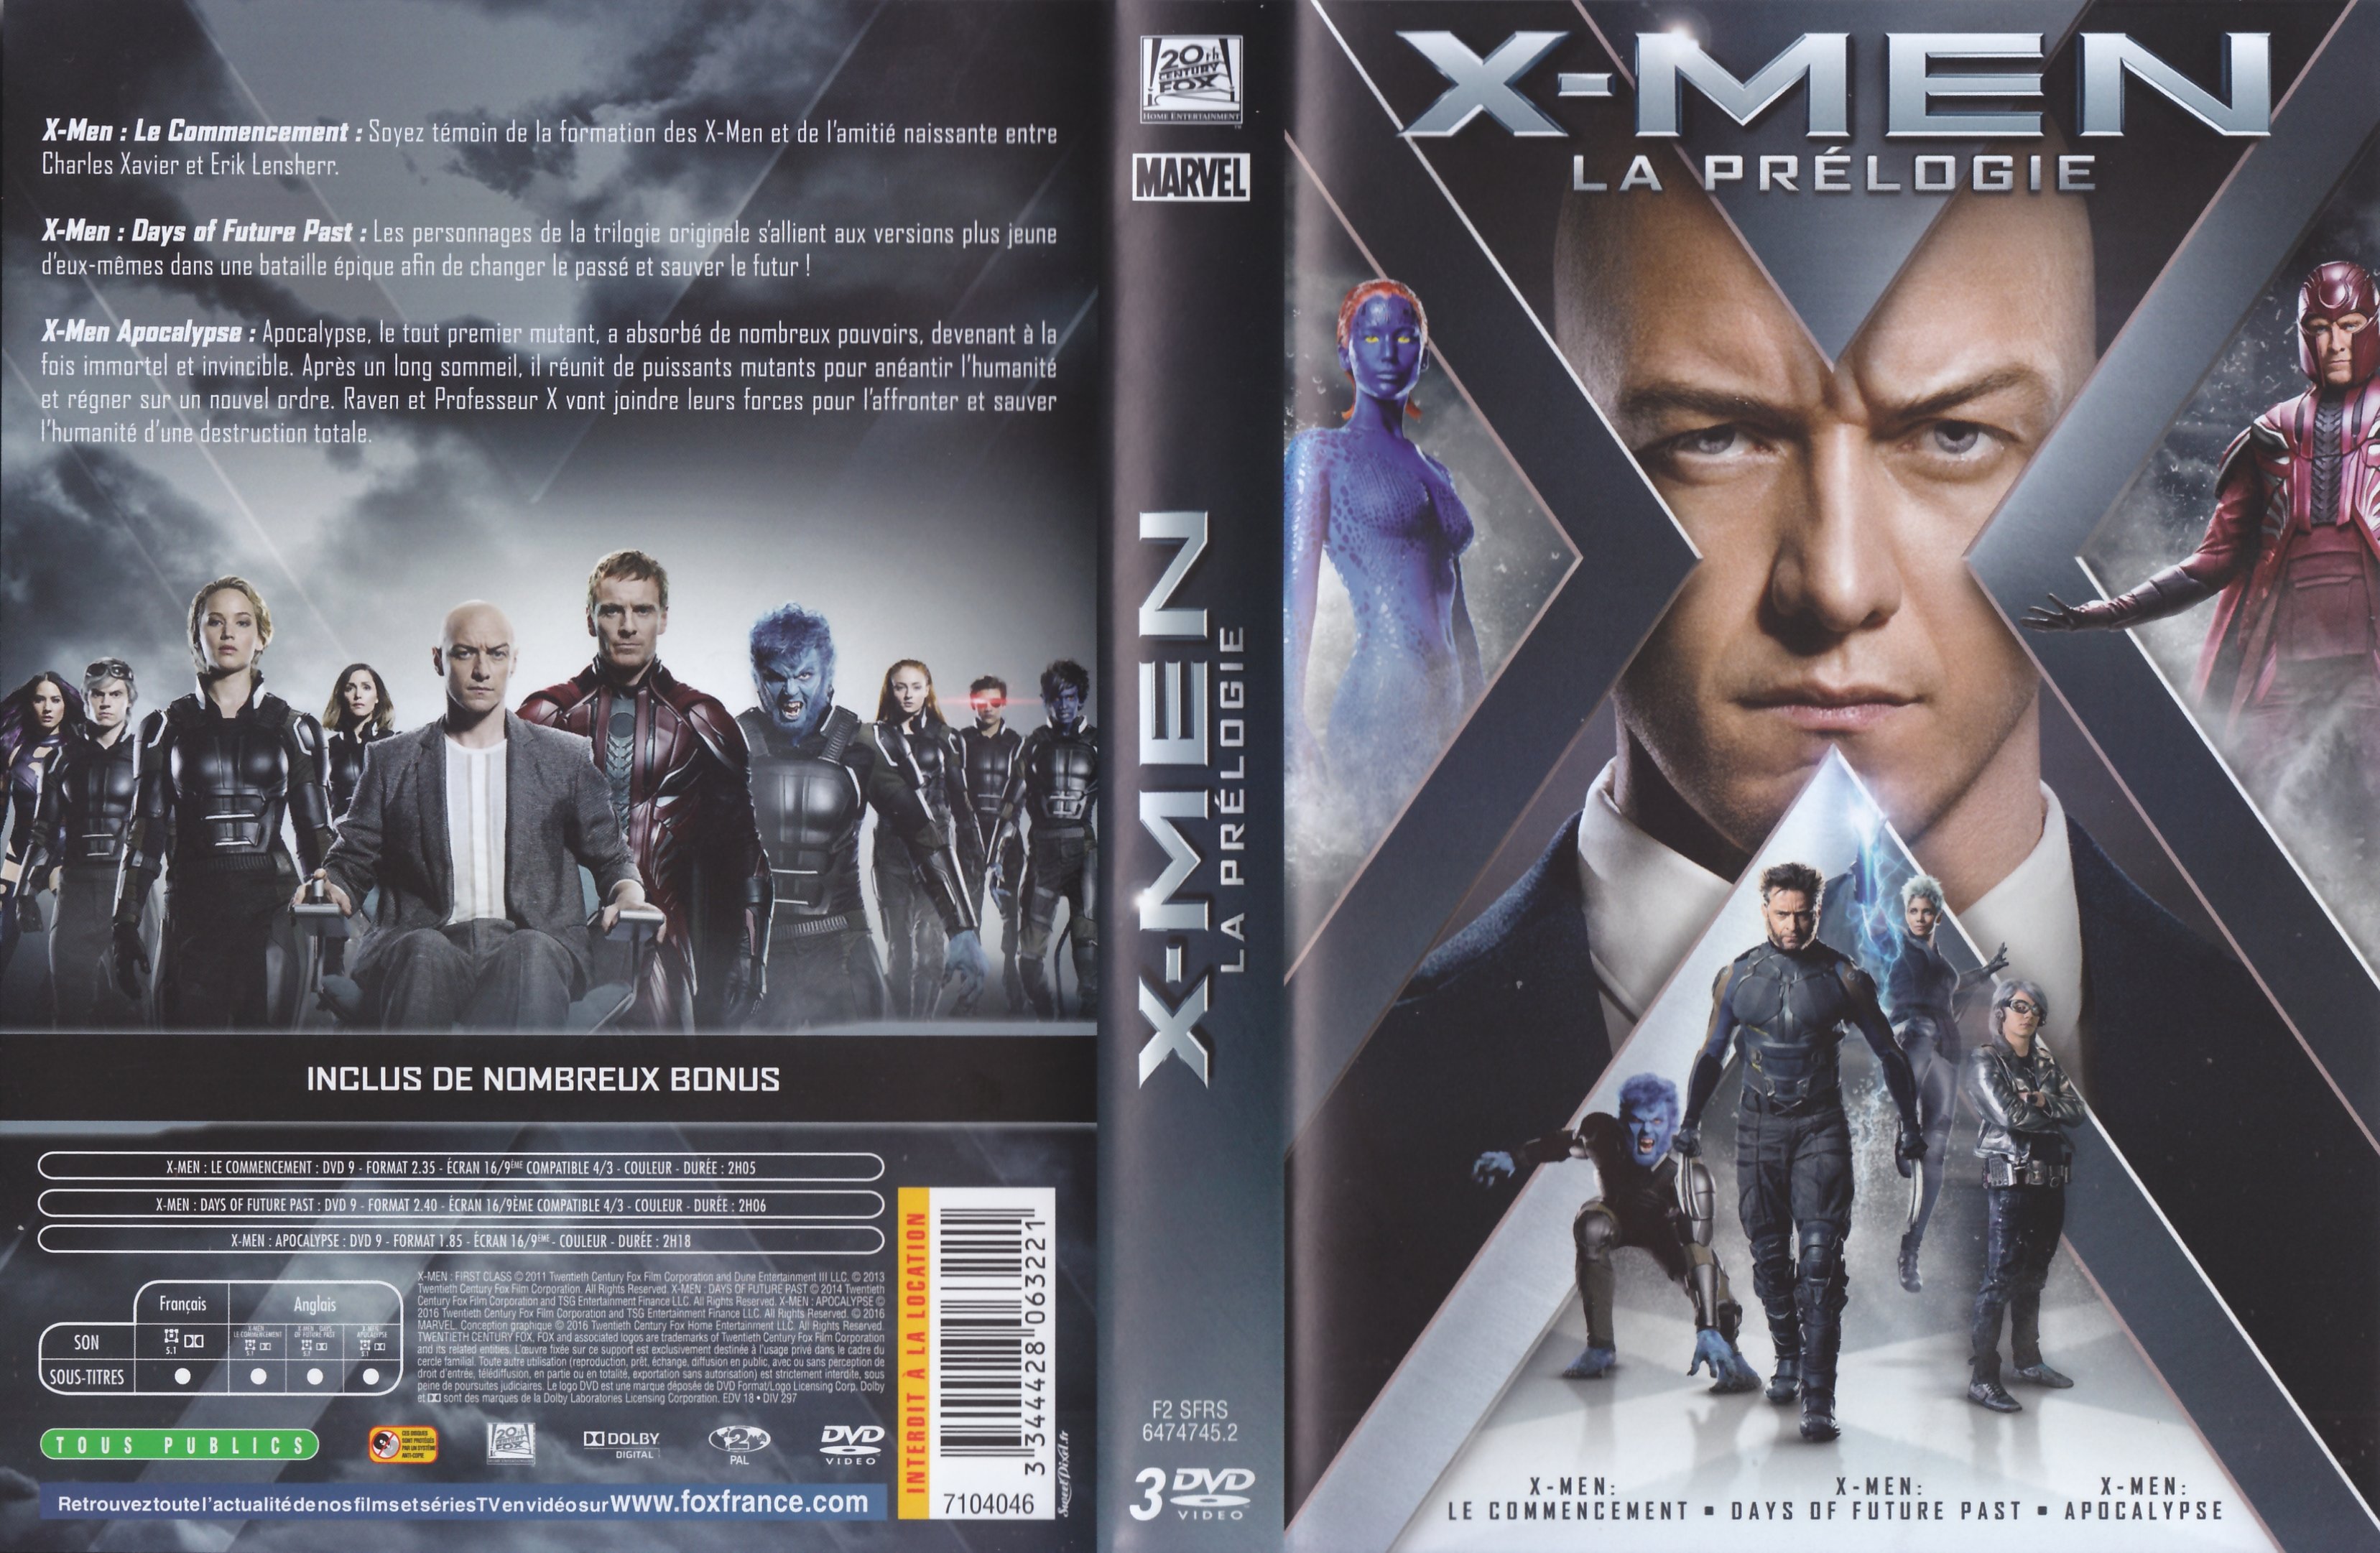 Jaquette DVD X-Men Prelogie